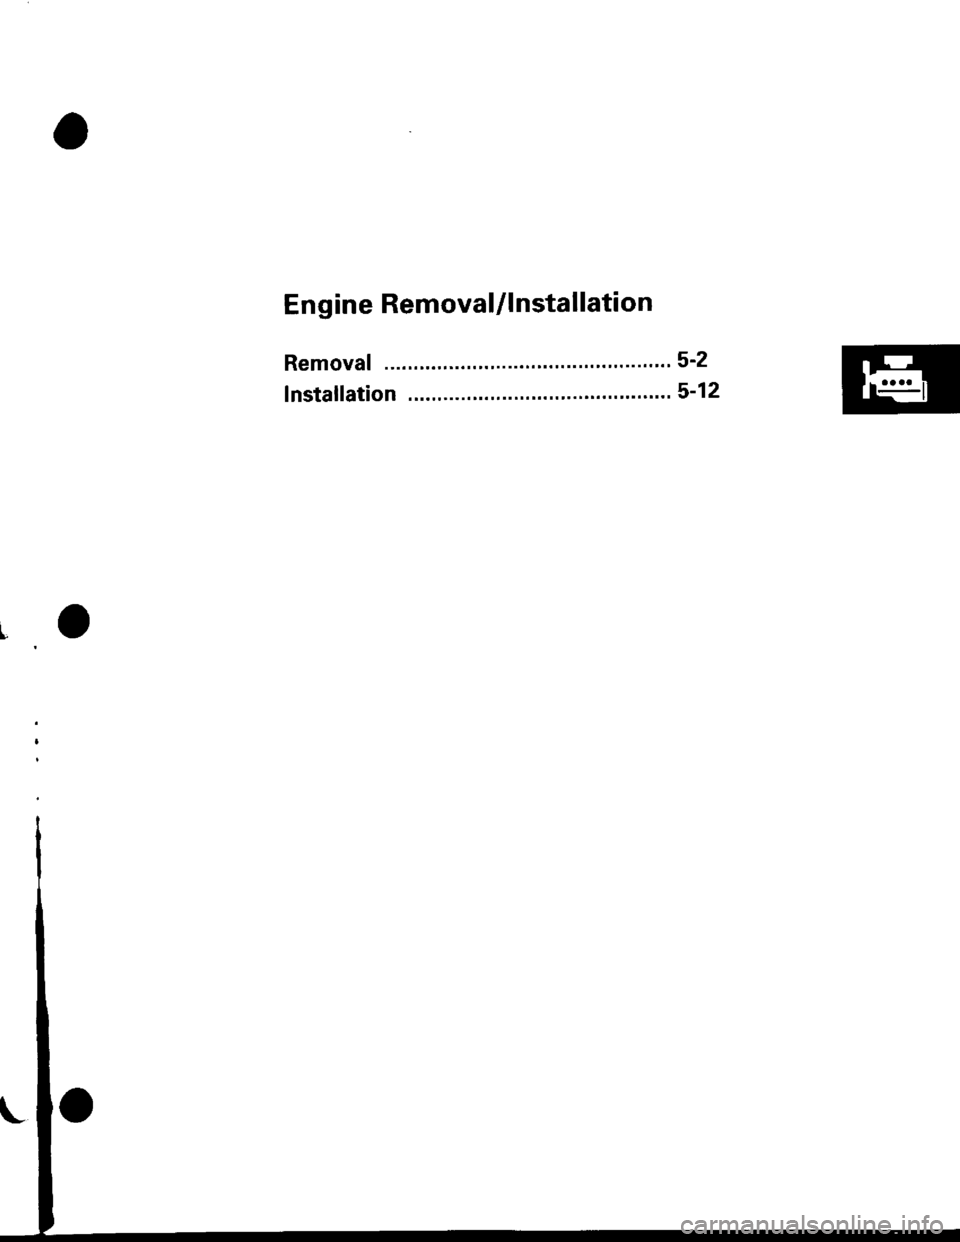 HONDA CIVIC 1997 6.G Workshop Manual En g ine Removal/l nstallation
Removal "...52
lnstaf lation . 5-12lgr" 